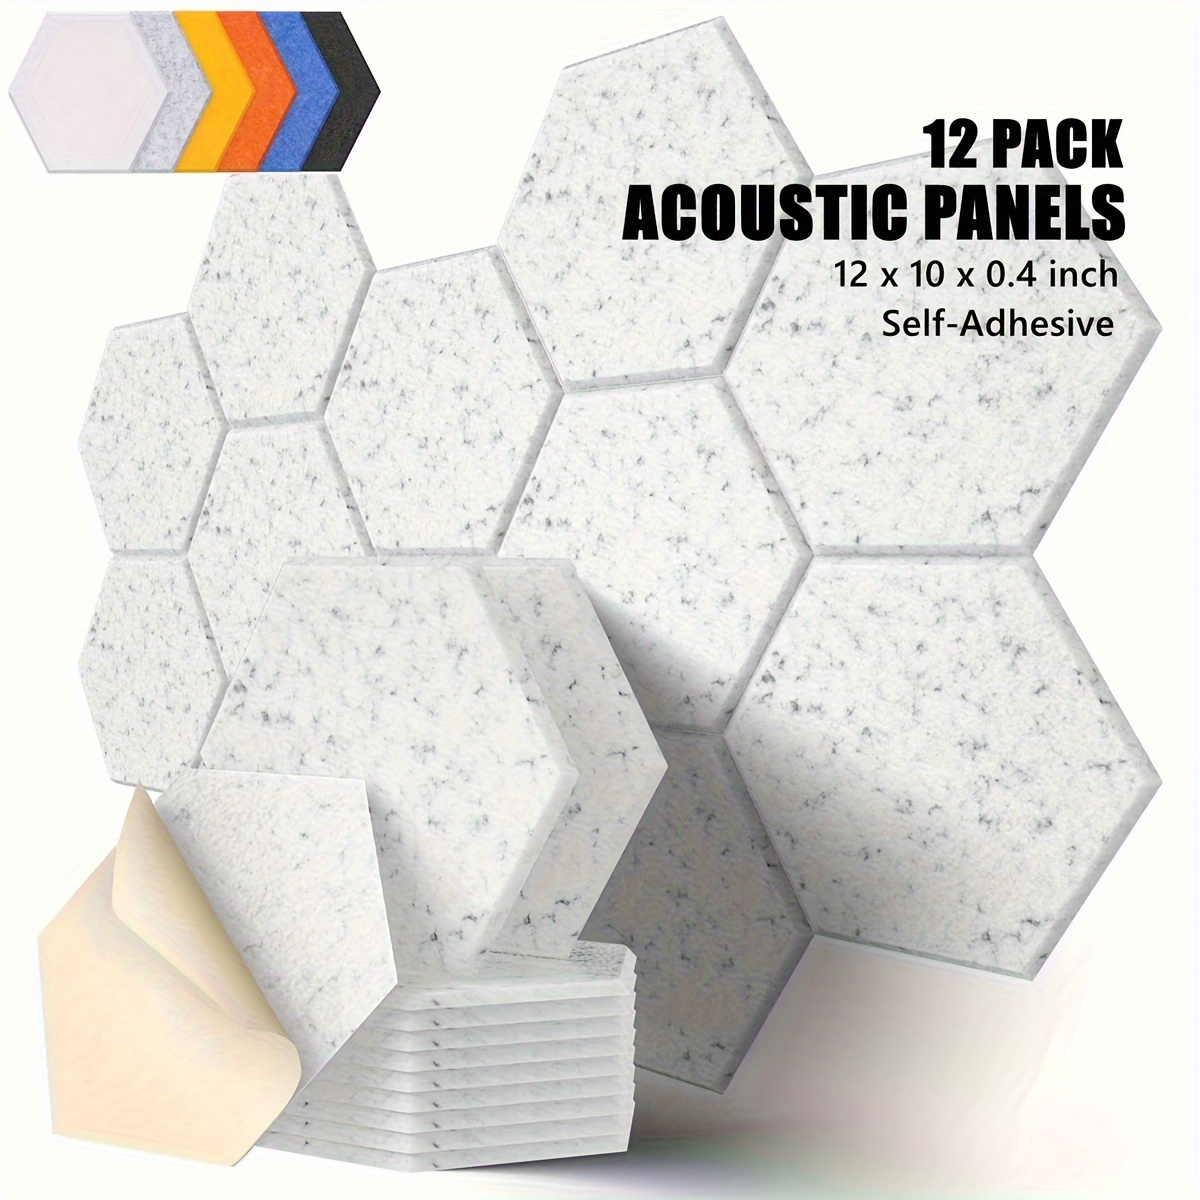 12 Pack De Panneaux Acoustiques Hexagonaux, 12 X 10x 0.4inch Pour